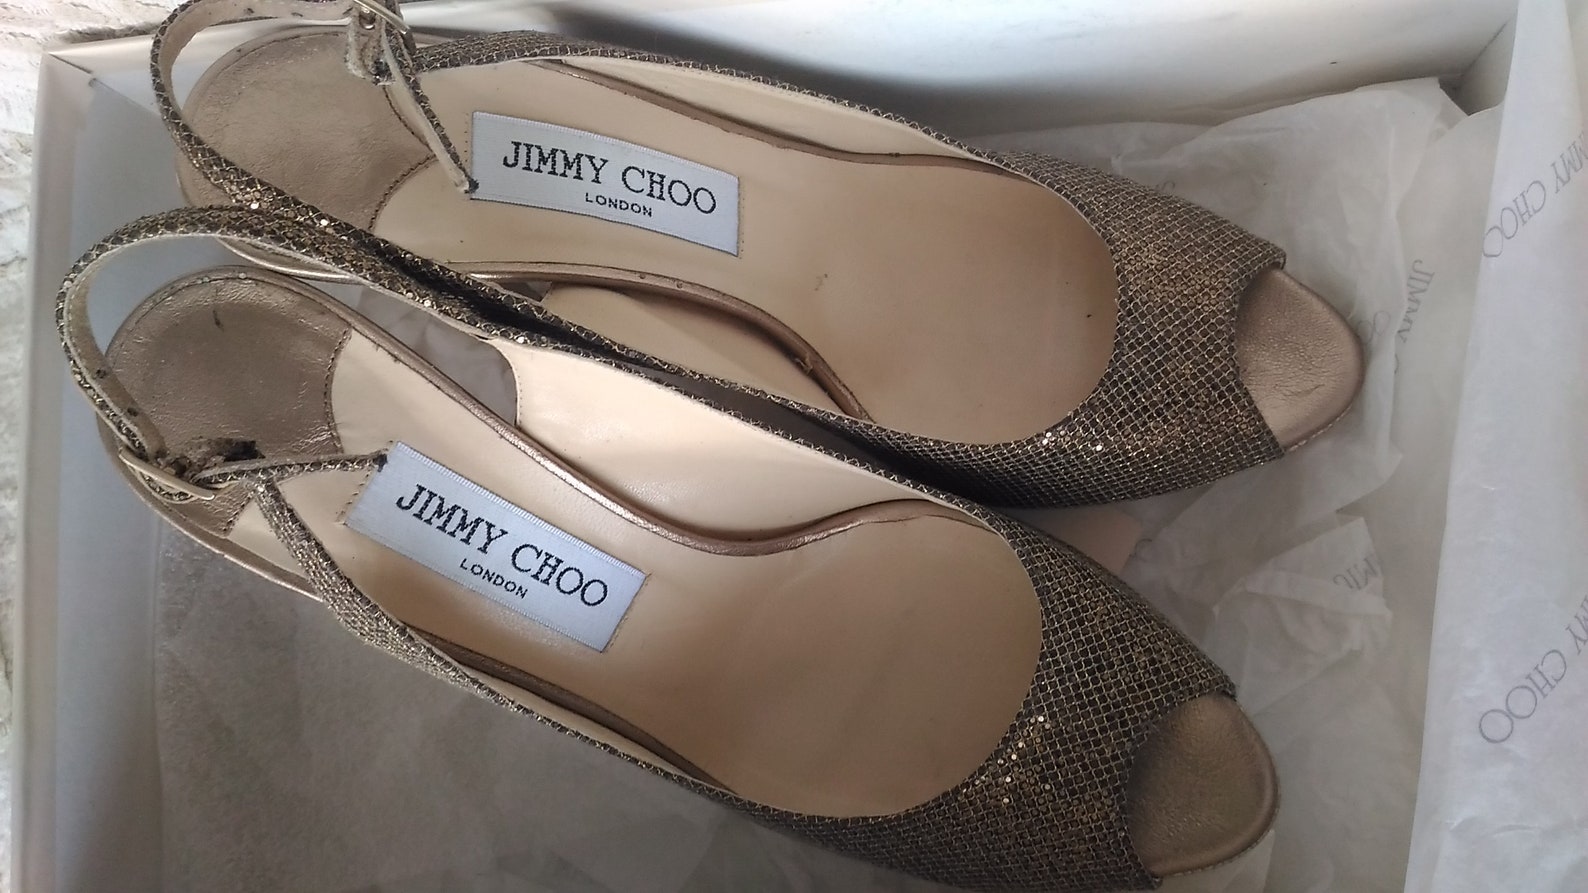 Original Jimmy Choo high heels Jimmy Choo shoes vintage | Etsy